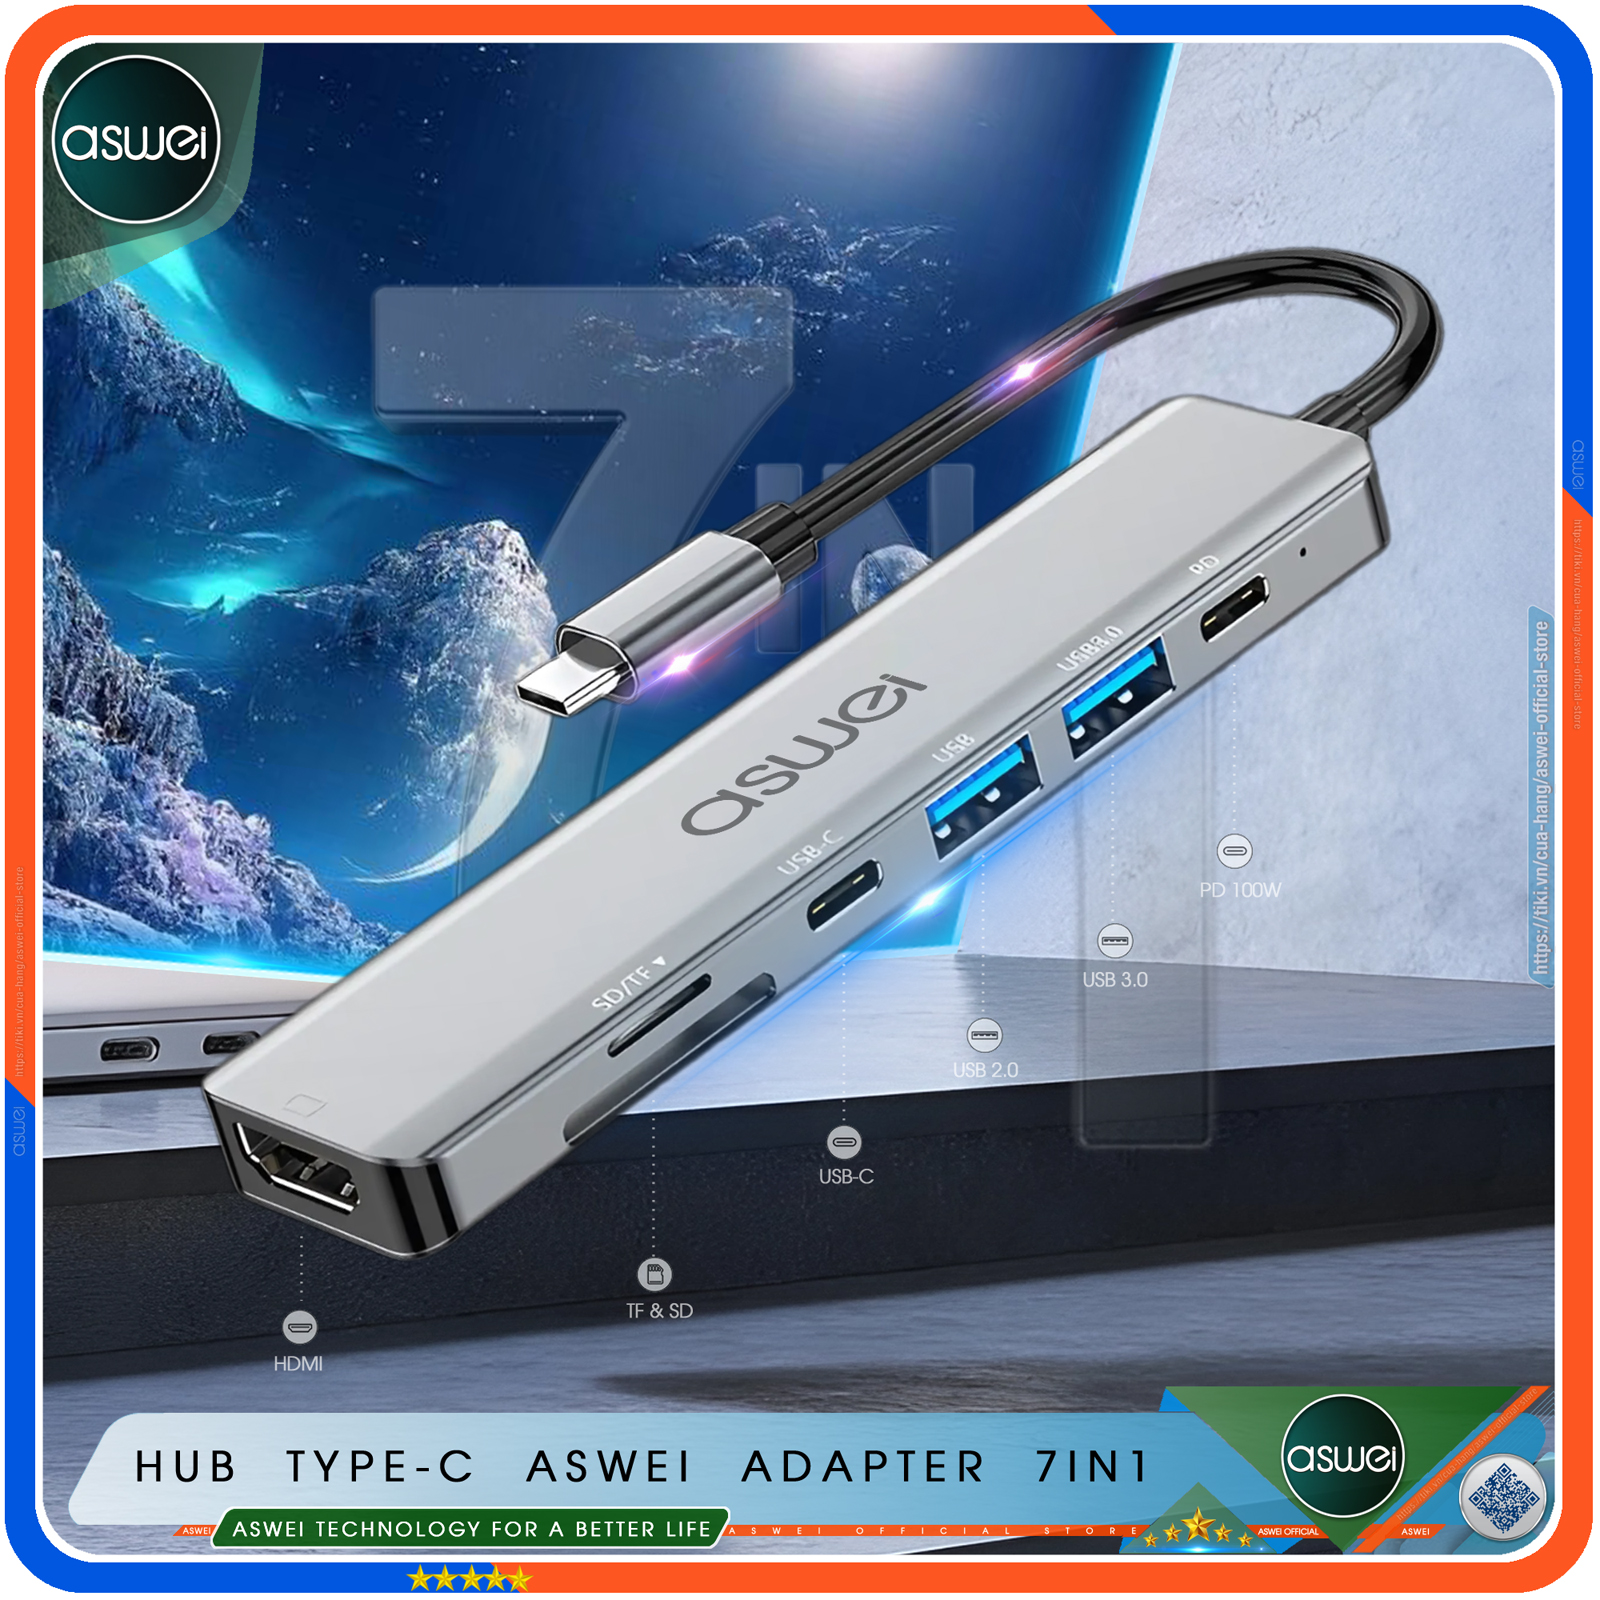 Hub Type C To HDMI ASWEI 7 in 1 Chuẩn HDTV - Hub Chuyển Đổi USB Type-C To HDMI 4K, USB 3.0, Sạc Nhanh PD 100W, USB-C, Đầu Đọc Thẻ Nhớ SD TF - Bộ Chia USB Kết Nối Tốc Độ Cao - Dành Cho Macbook, Laptop, PC, Máy Tính Bảng, Điện Thoại - Hàng Chính Hãng